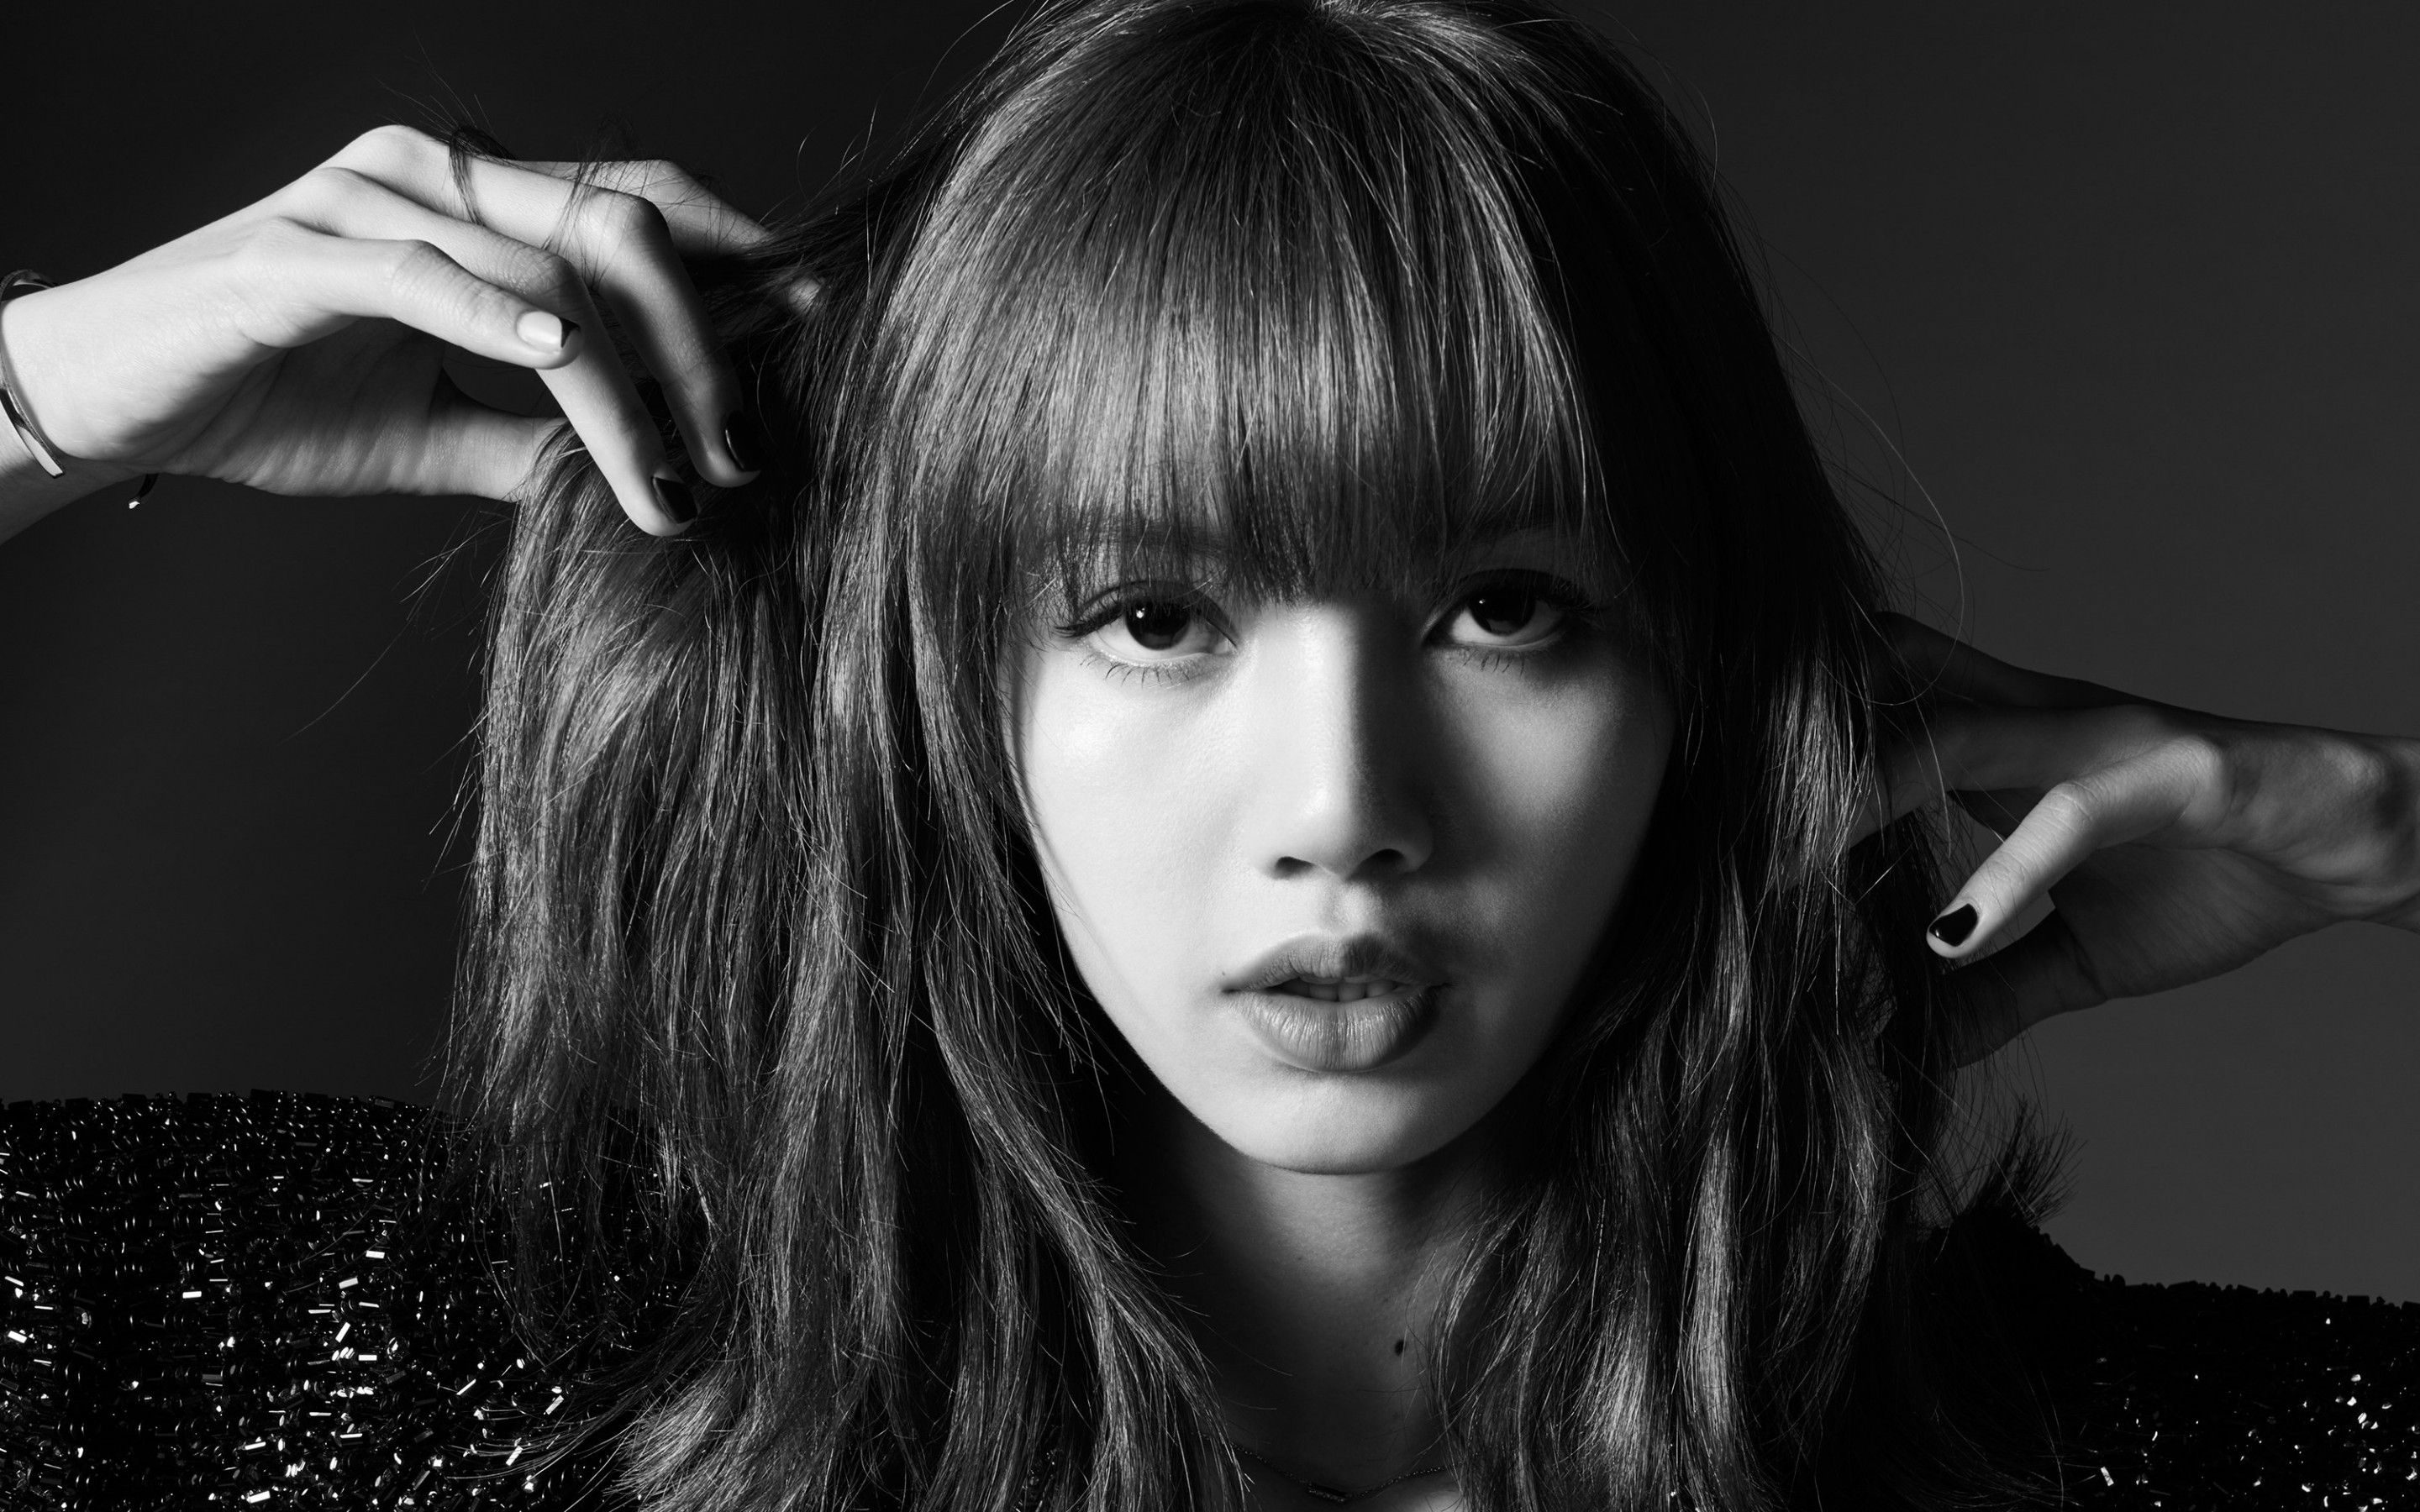 Lisa 4K Wallpaper, Blackpink, Thai Singer, Asian Girl, K Pop Singer, Black/ Dark